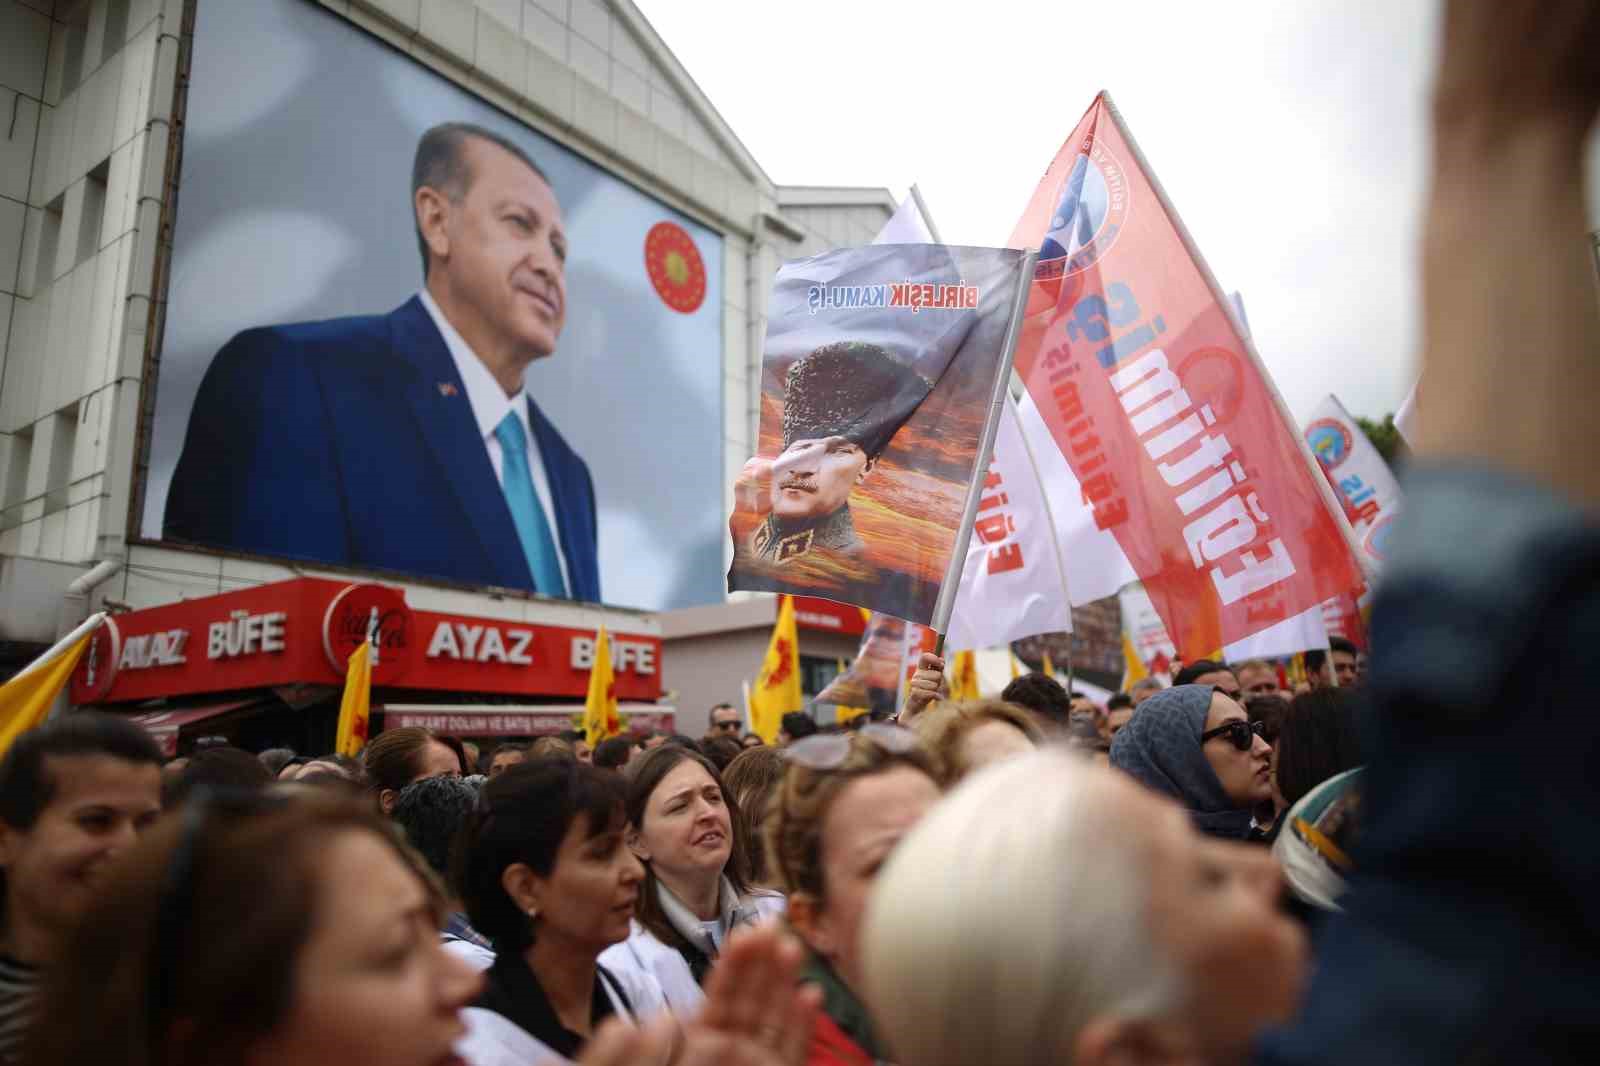 istanbulda bir ogretmenin oldurulmesi bursada protesto edildi 7 5sTIsv8J